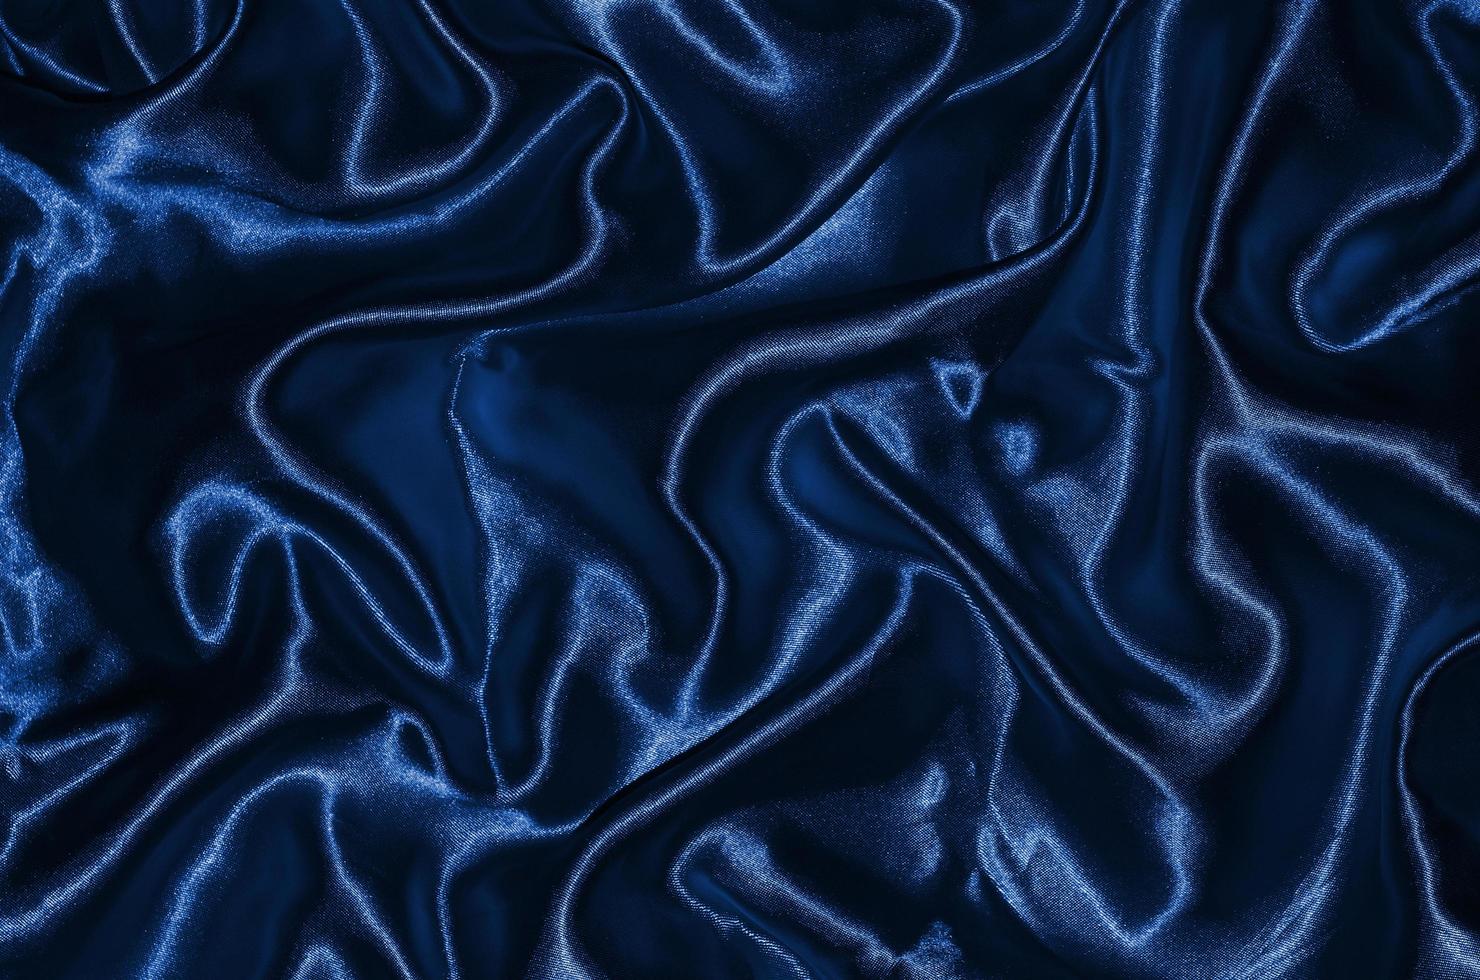 fond et papier peint en tissu bleu profond et textile à rayures photo